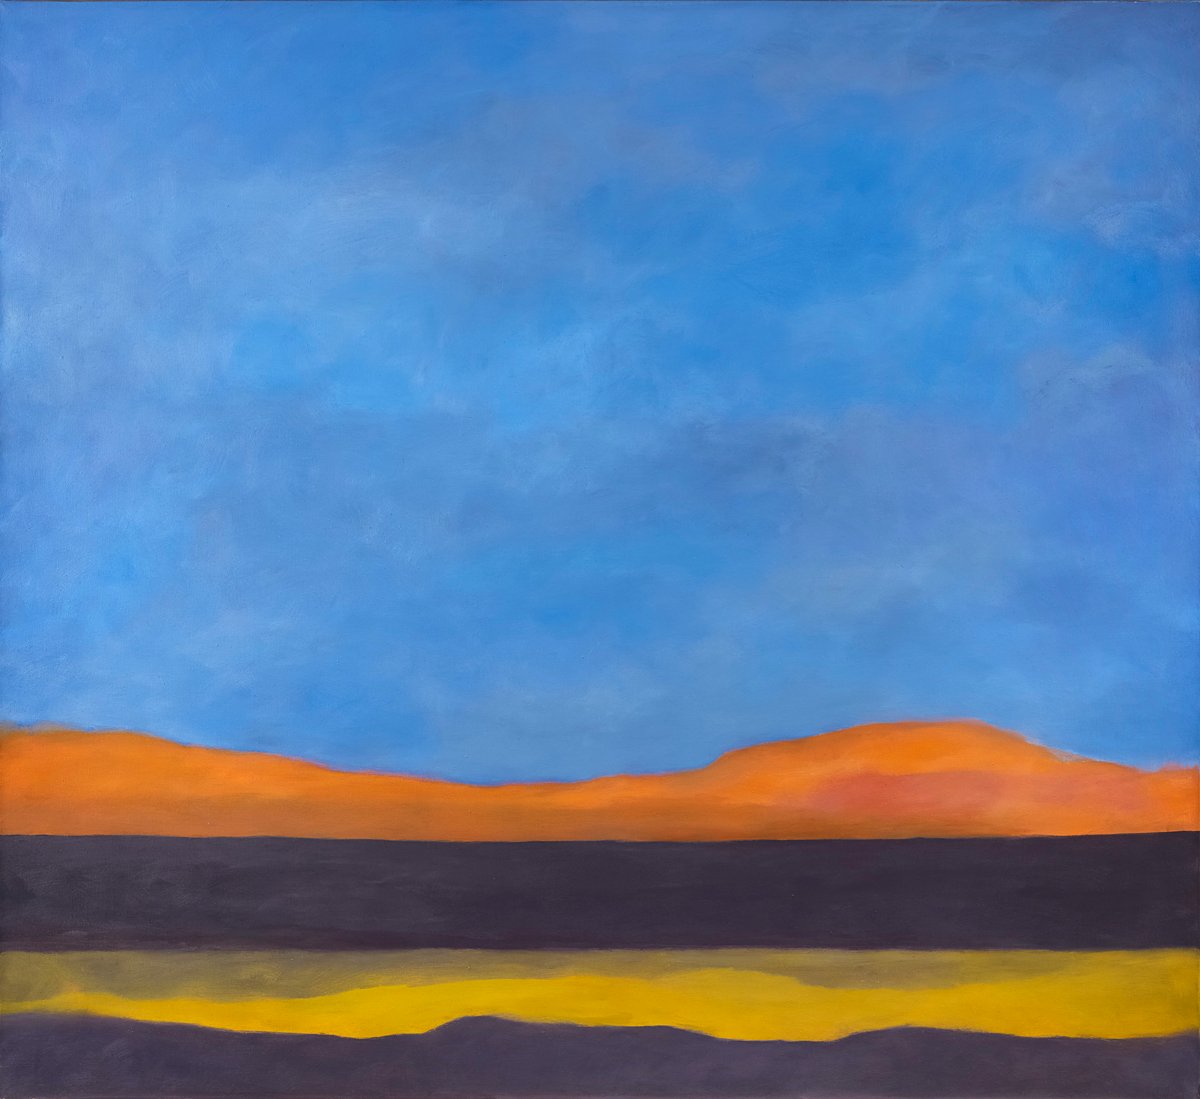 Jon Schueler, Sahara, I, 1973